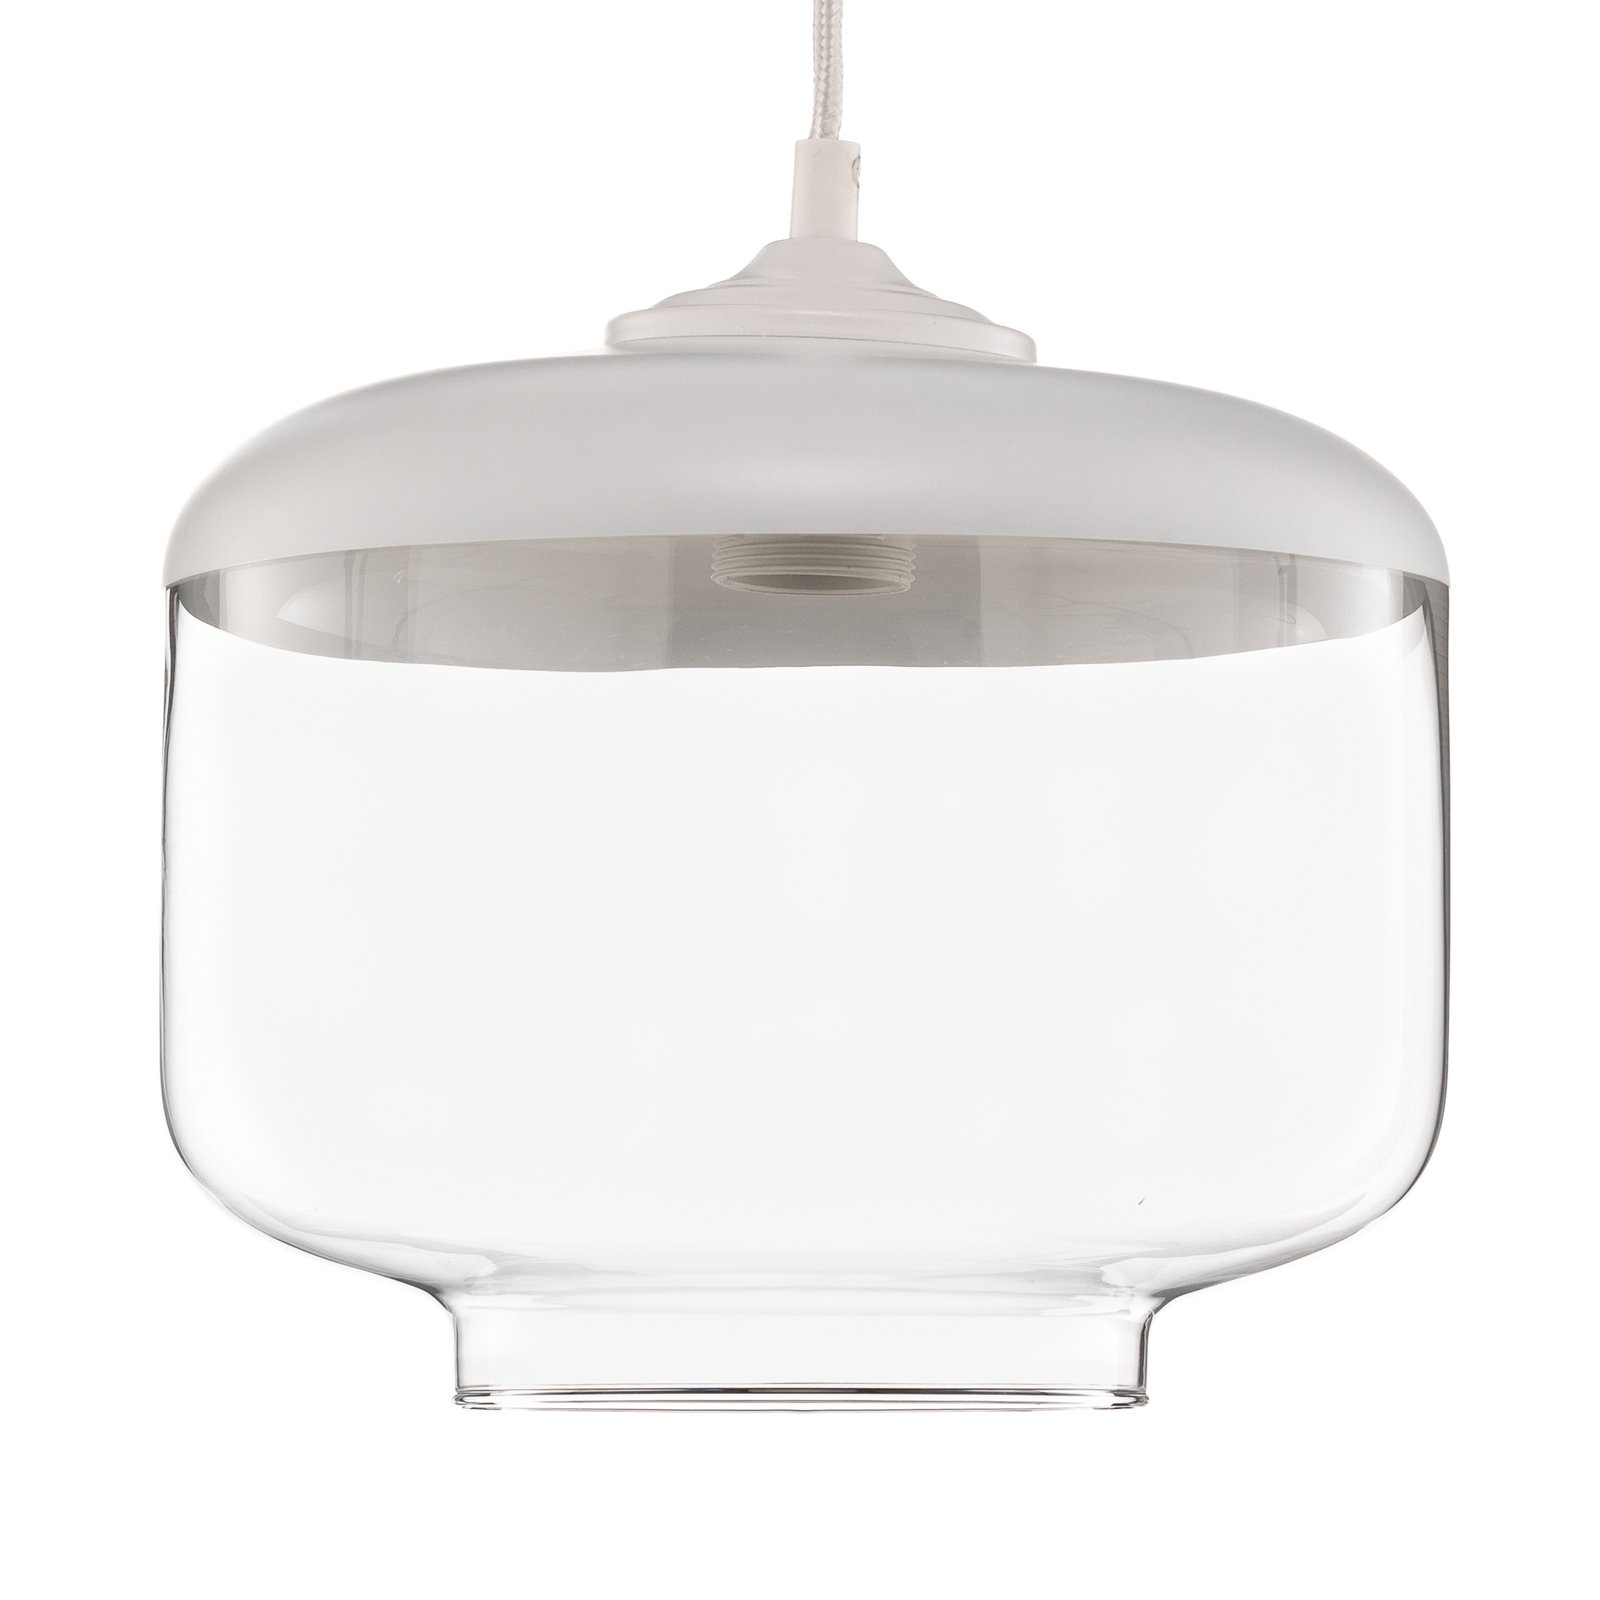 Lampa wisząca Monochrome Flash przezroczysta/biała Ø 25cm